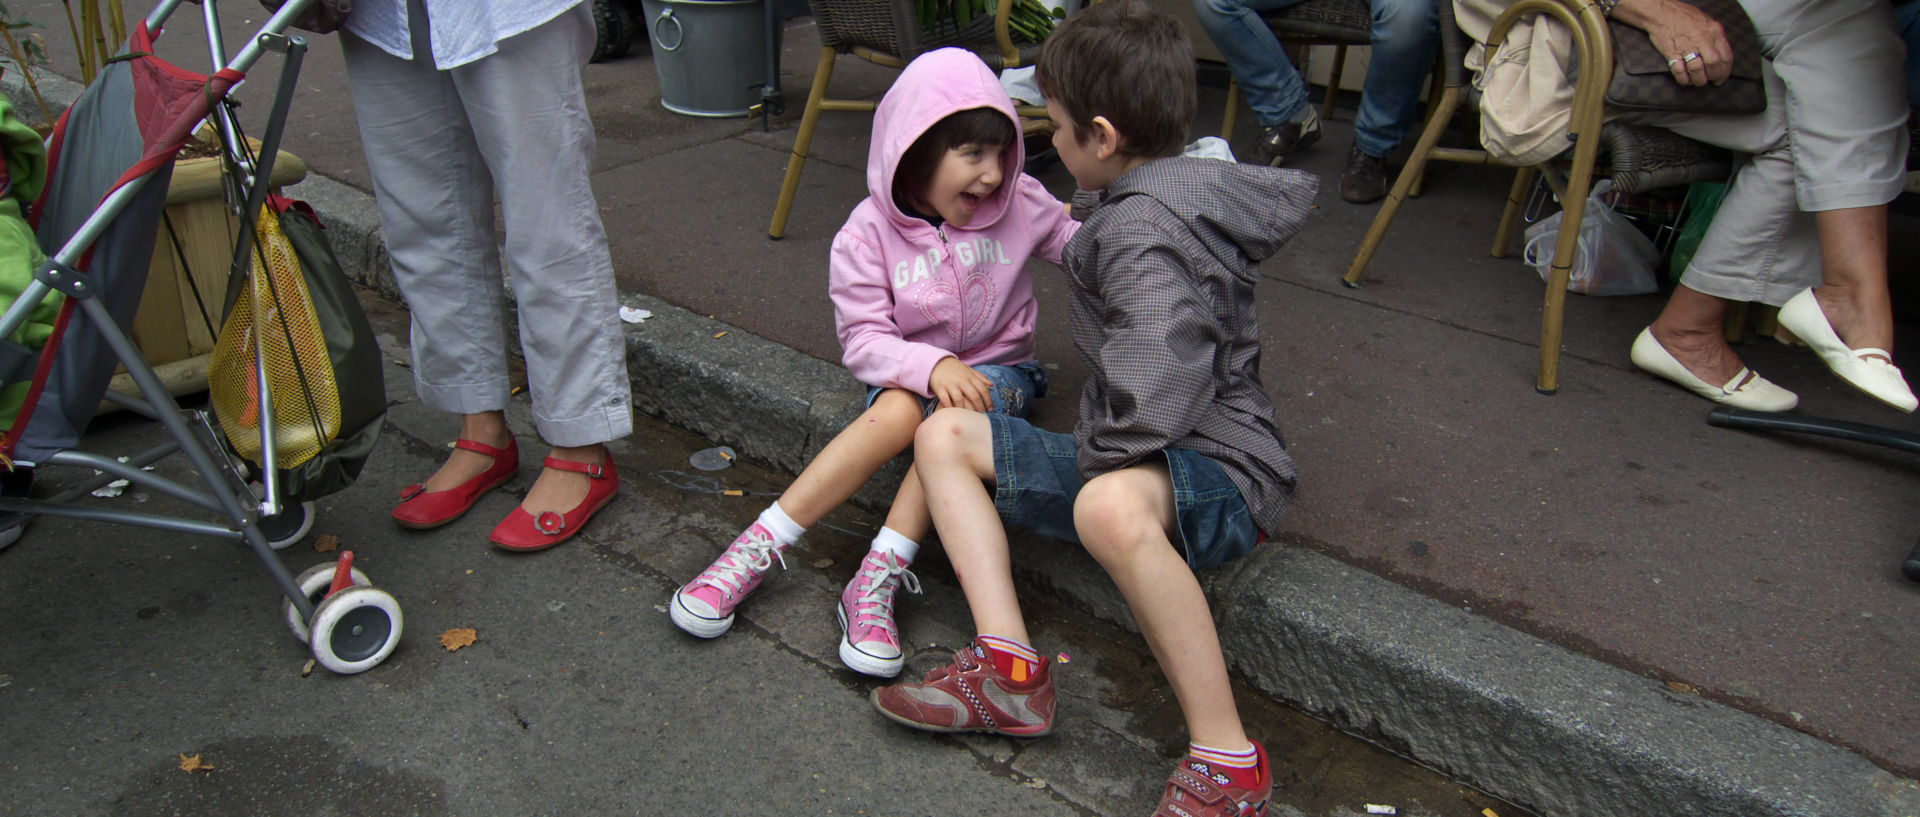 Photo au marché de Wazemmes avec des enfants, Lille, place de la nouvelle Aventure.